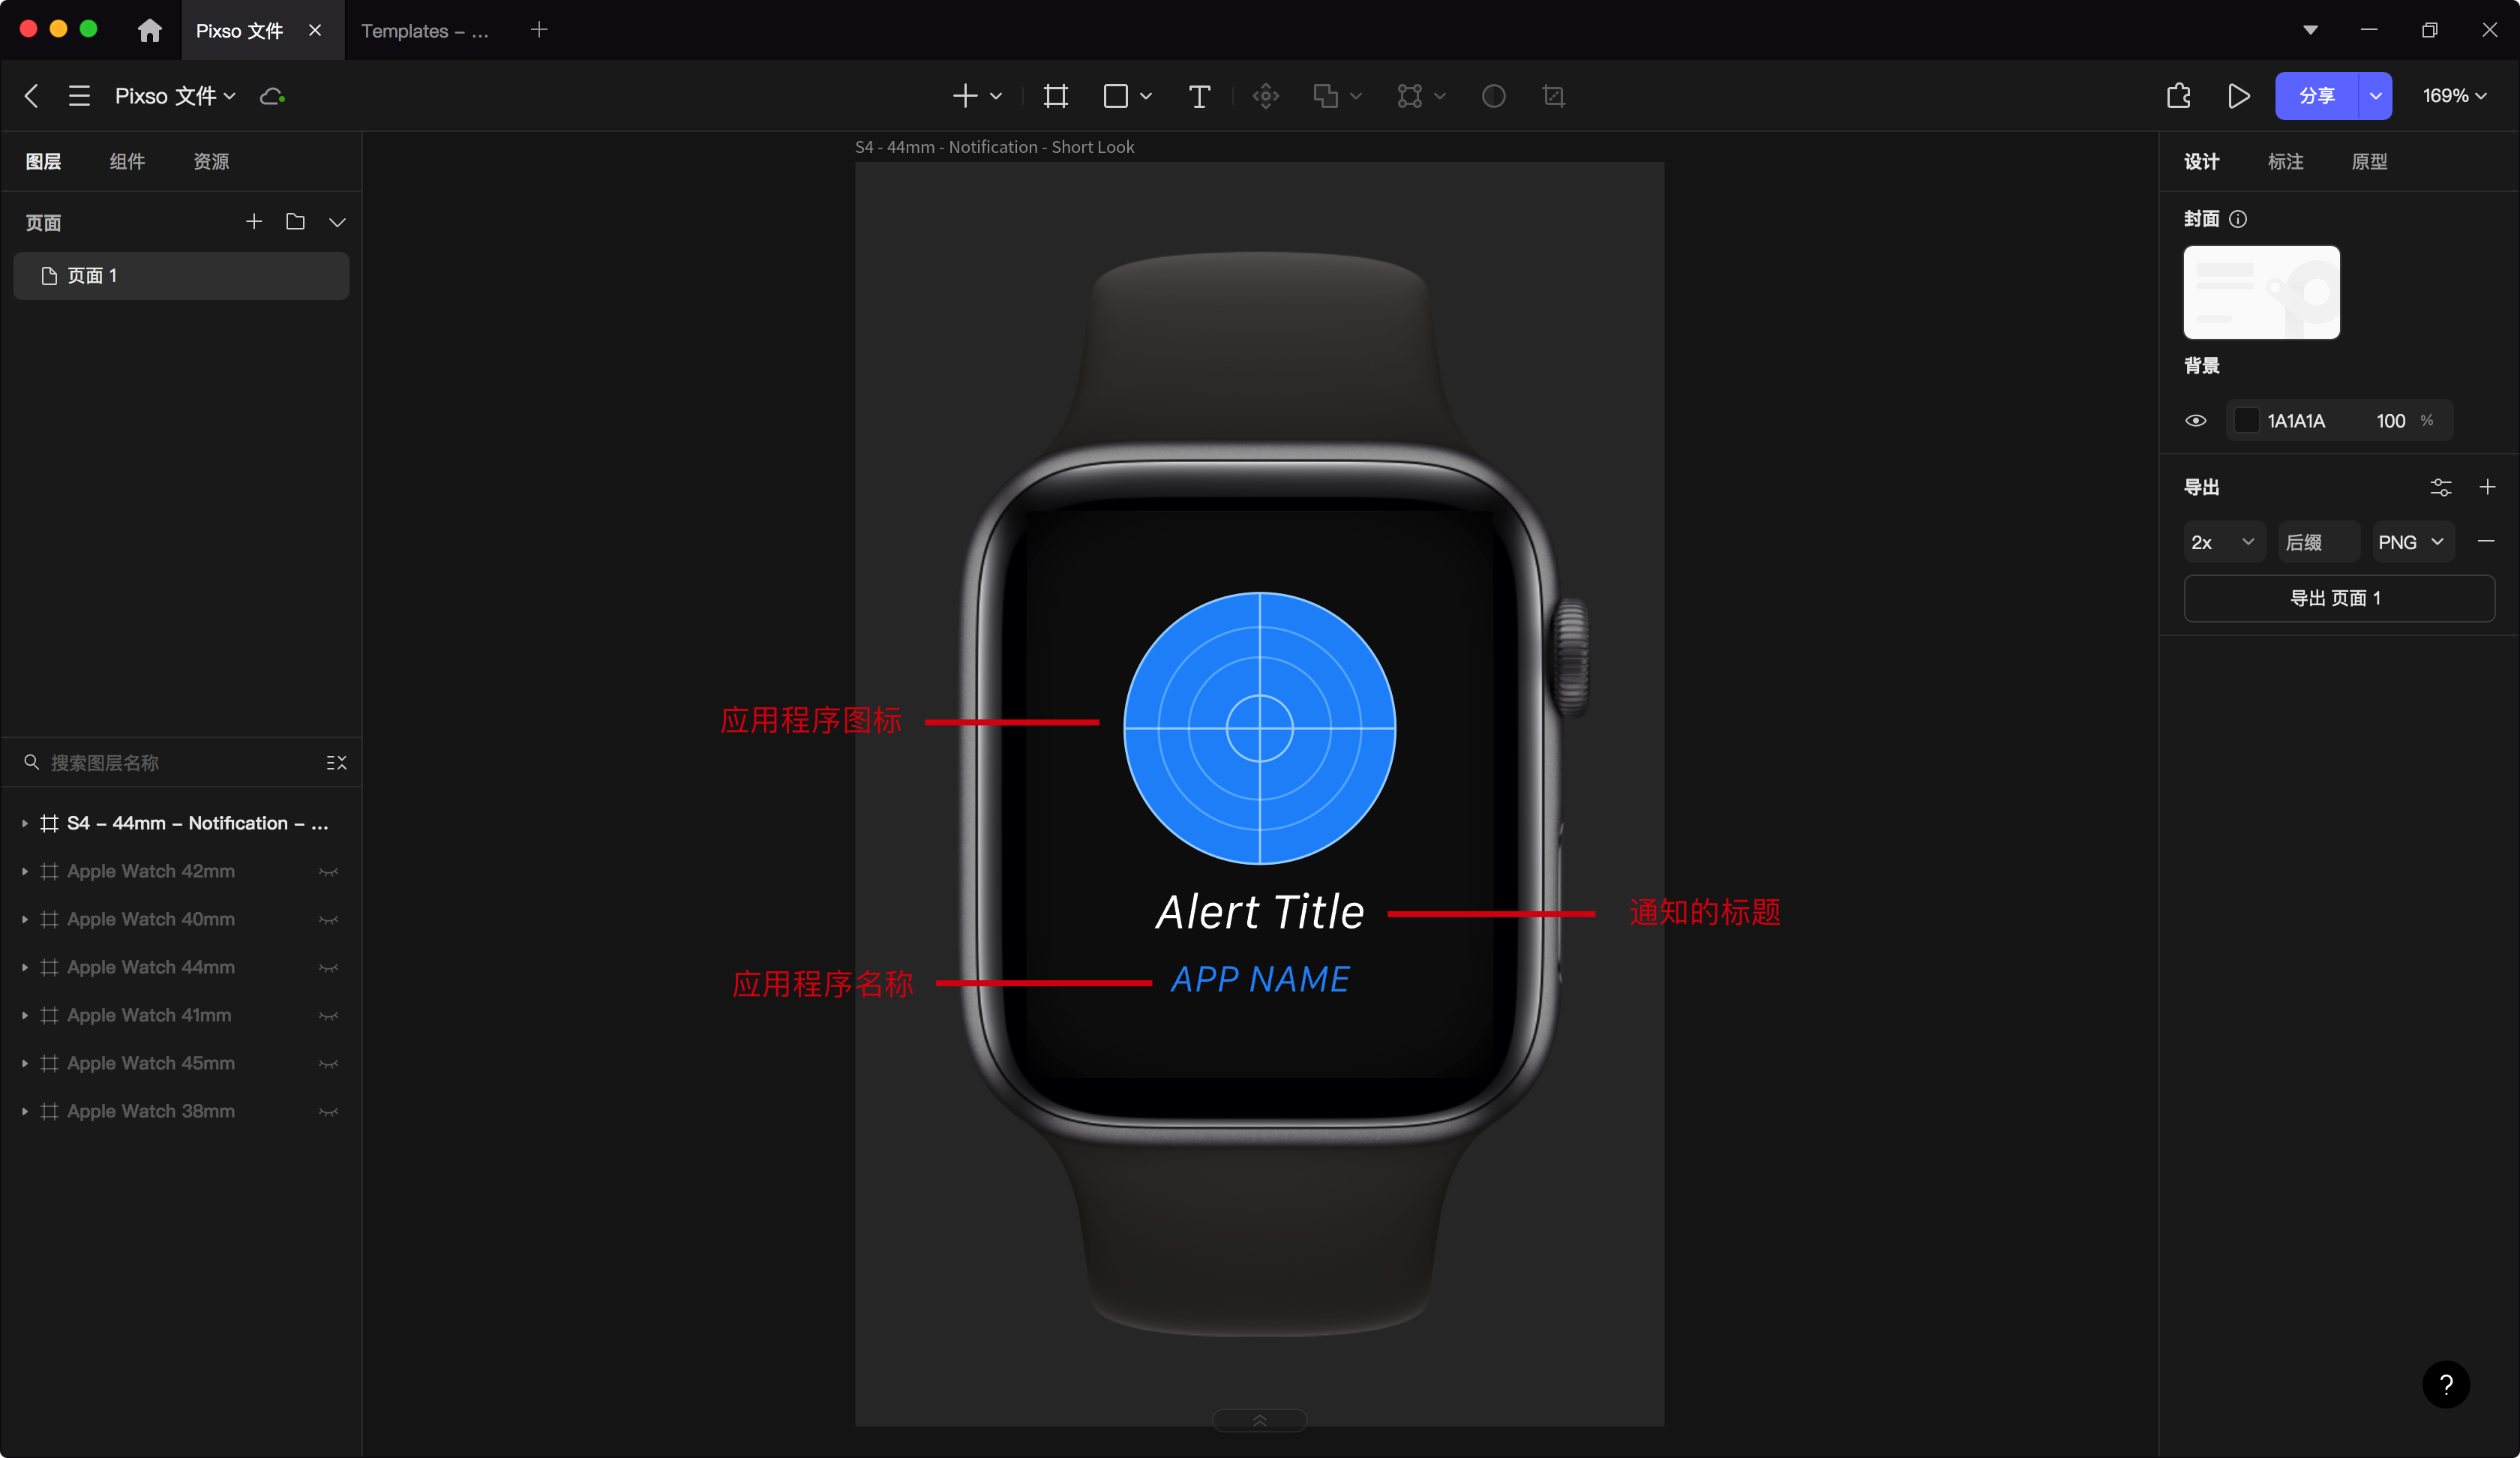 Apple Watch Short look界面